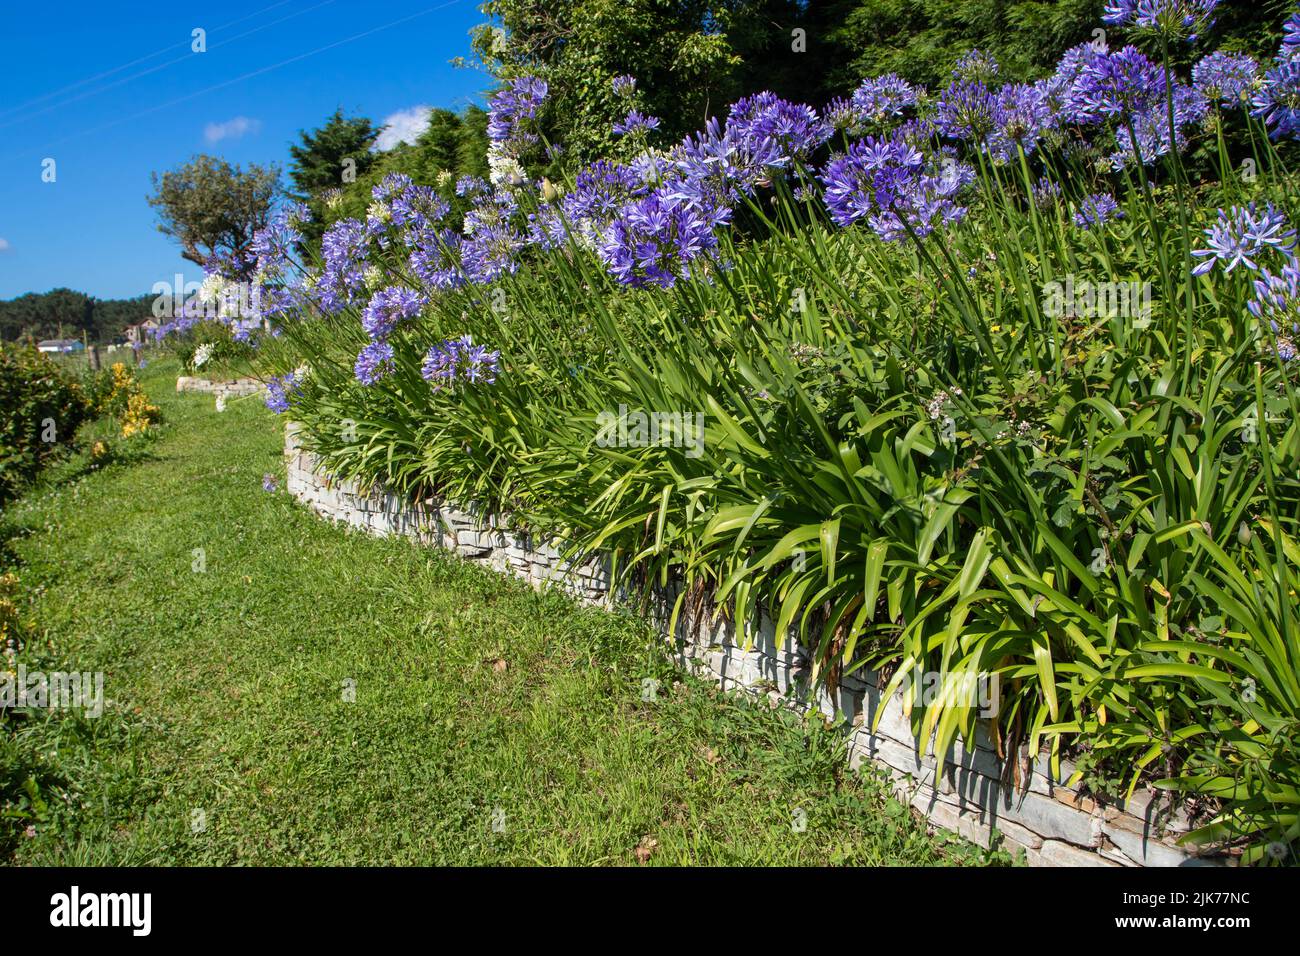 Agapanthus oder Lilie des Nils oder afrikanische Lilie blau und weiß Blumen auf der Stein Stützmauer umrahmt Gras Rasen Weg im Garten Stockfoto